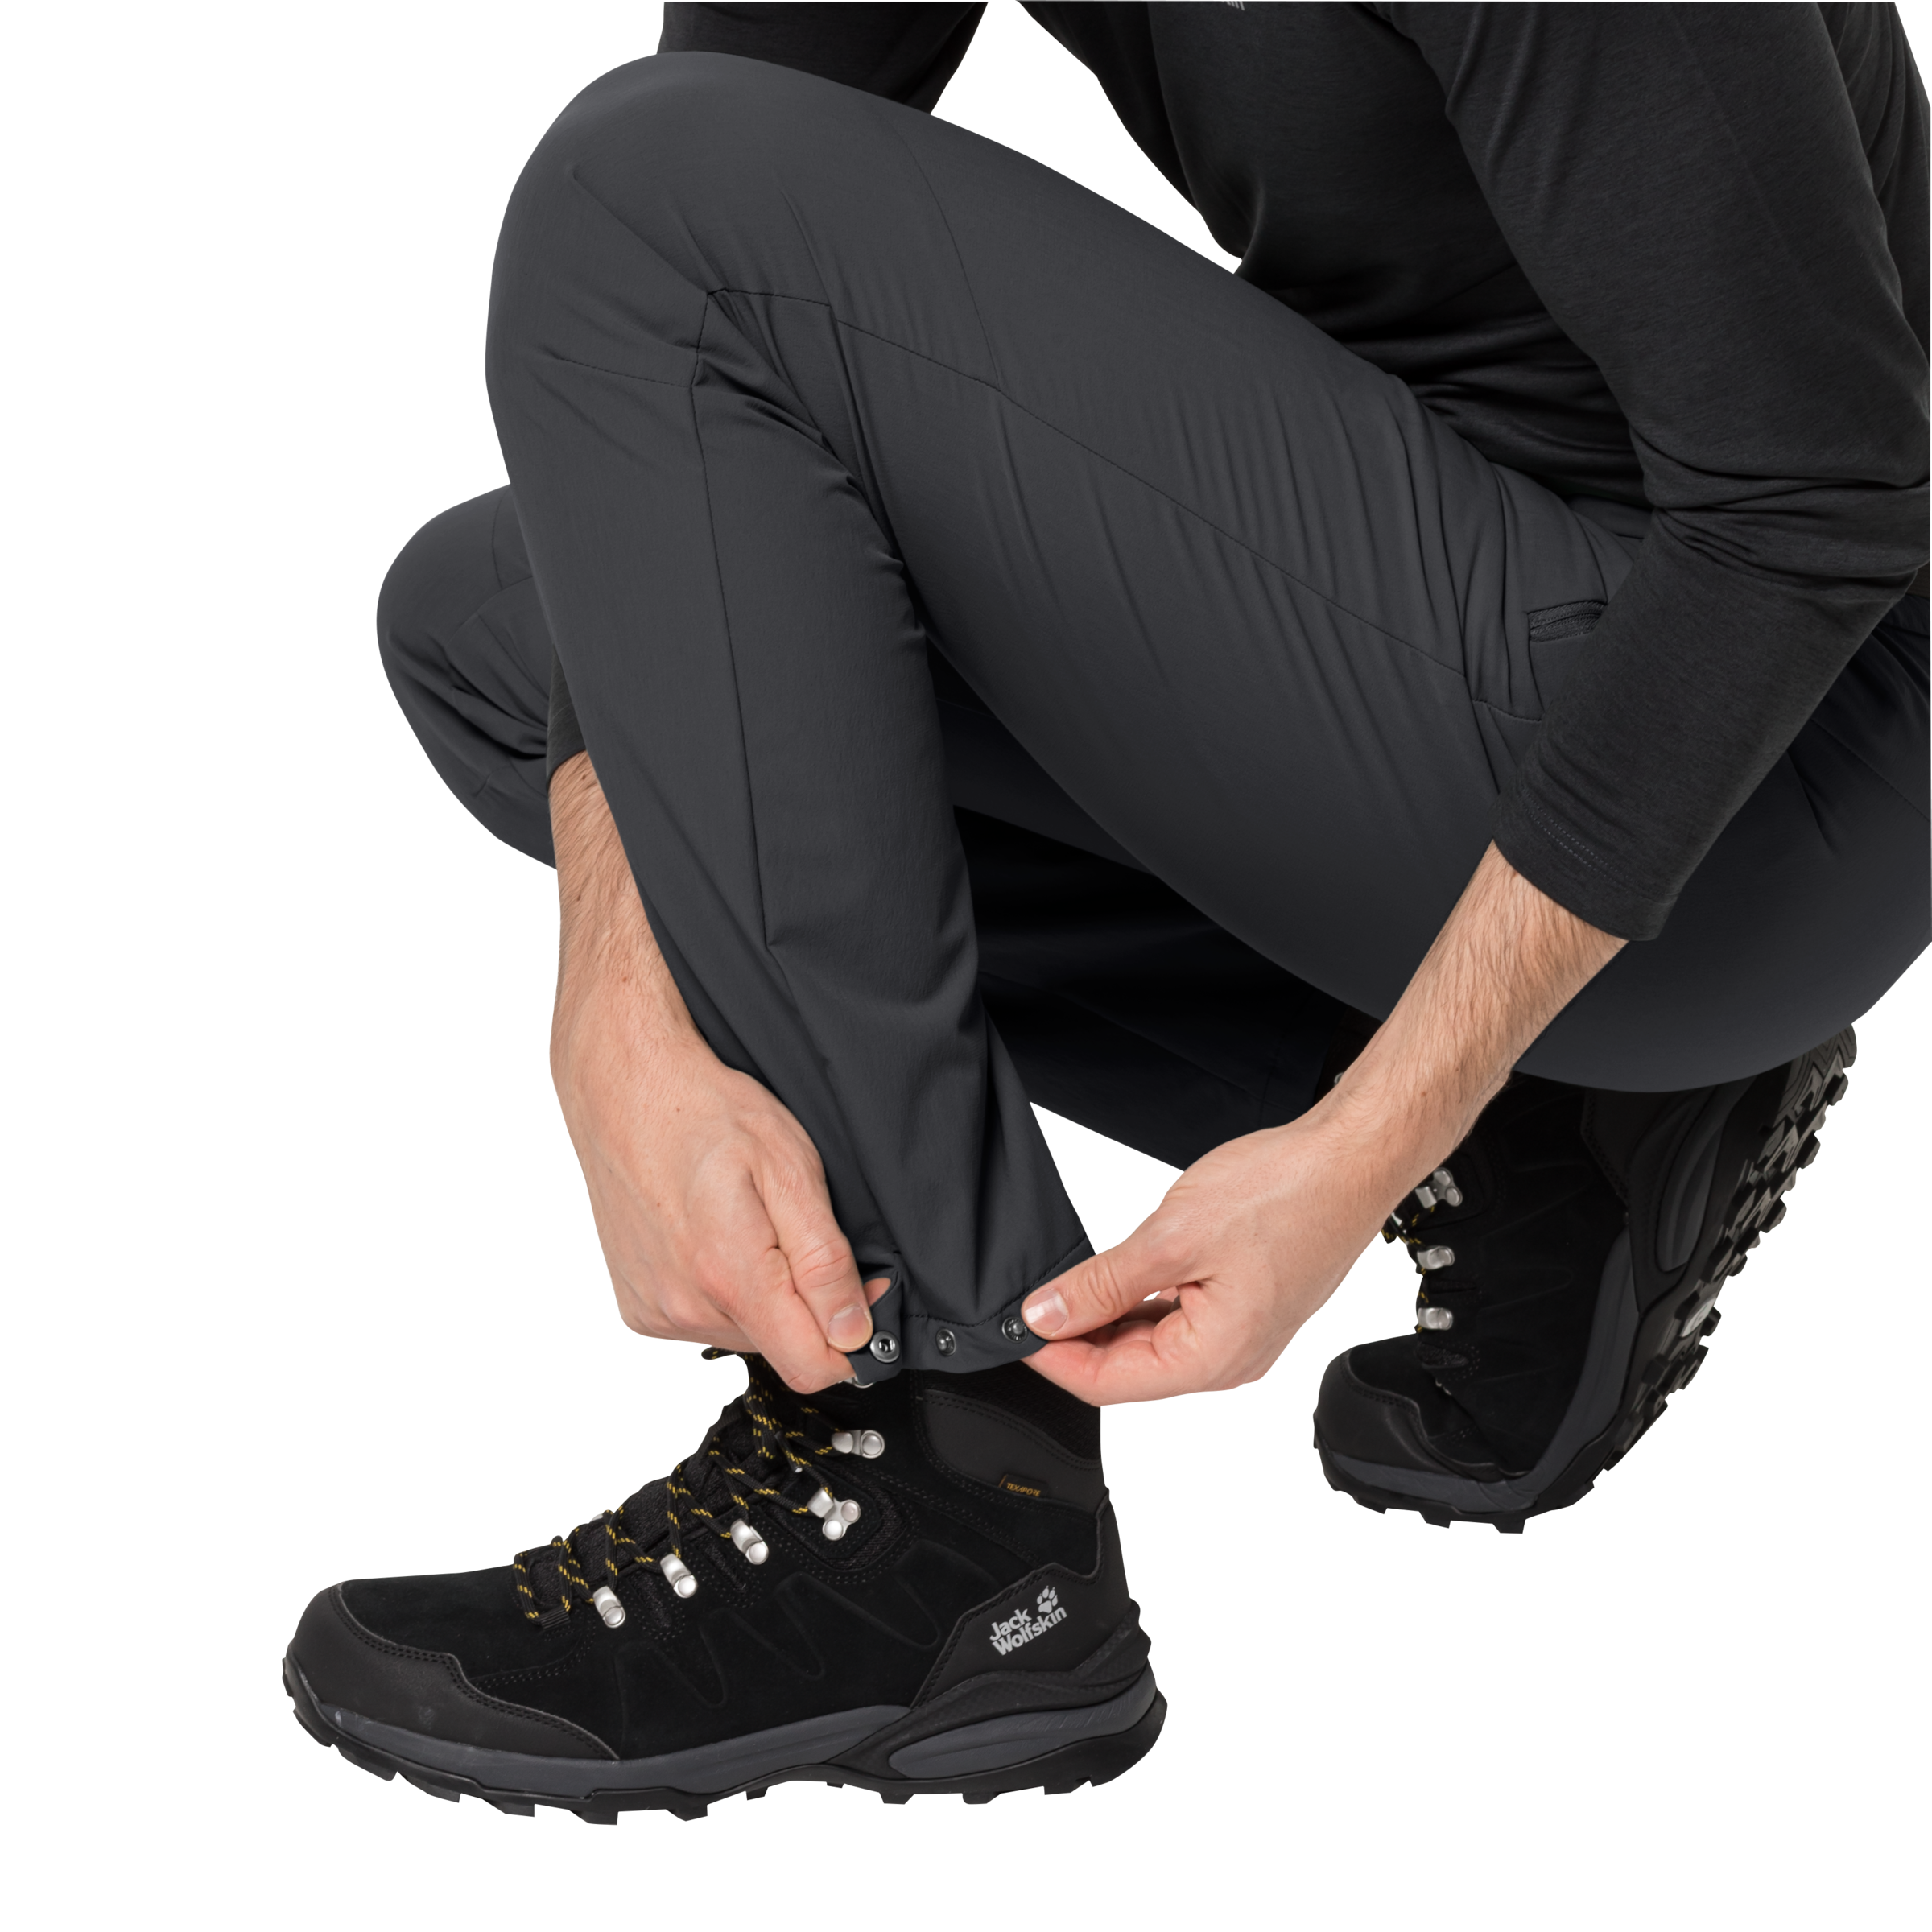 Jack Wolfskin Outdoorhose »HOLDSTEIG PANTS und hoch M«, Softshellhose bei elastische robuste atmungsaktive